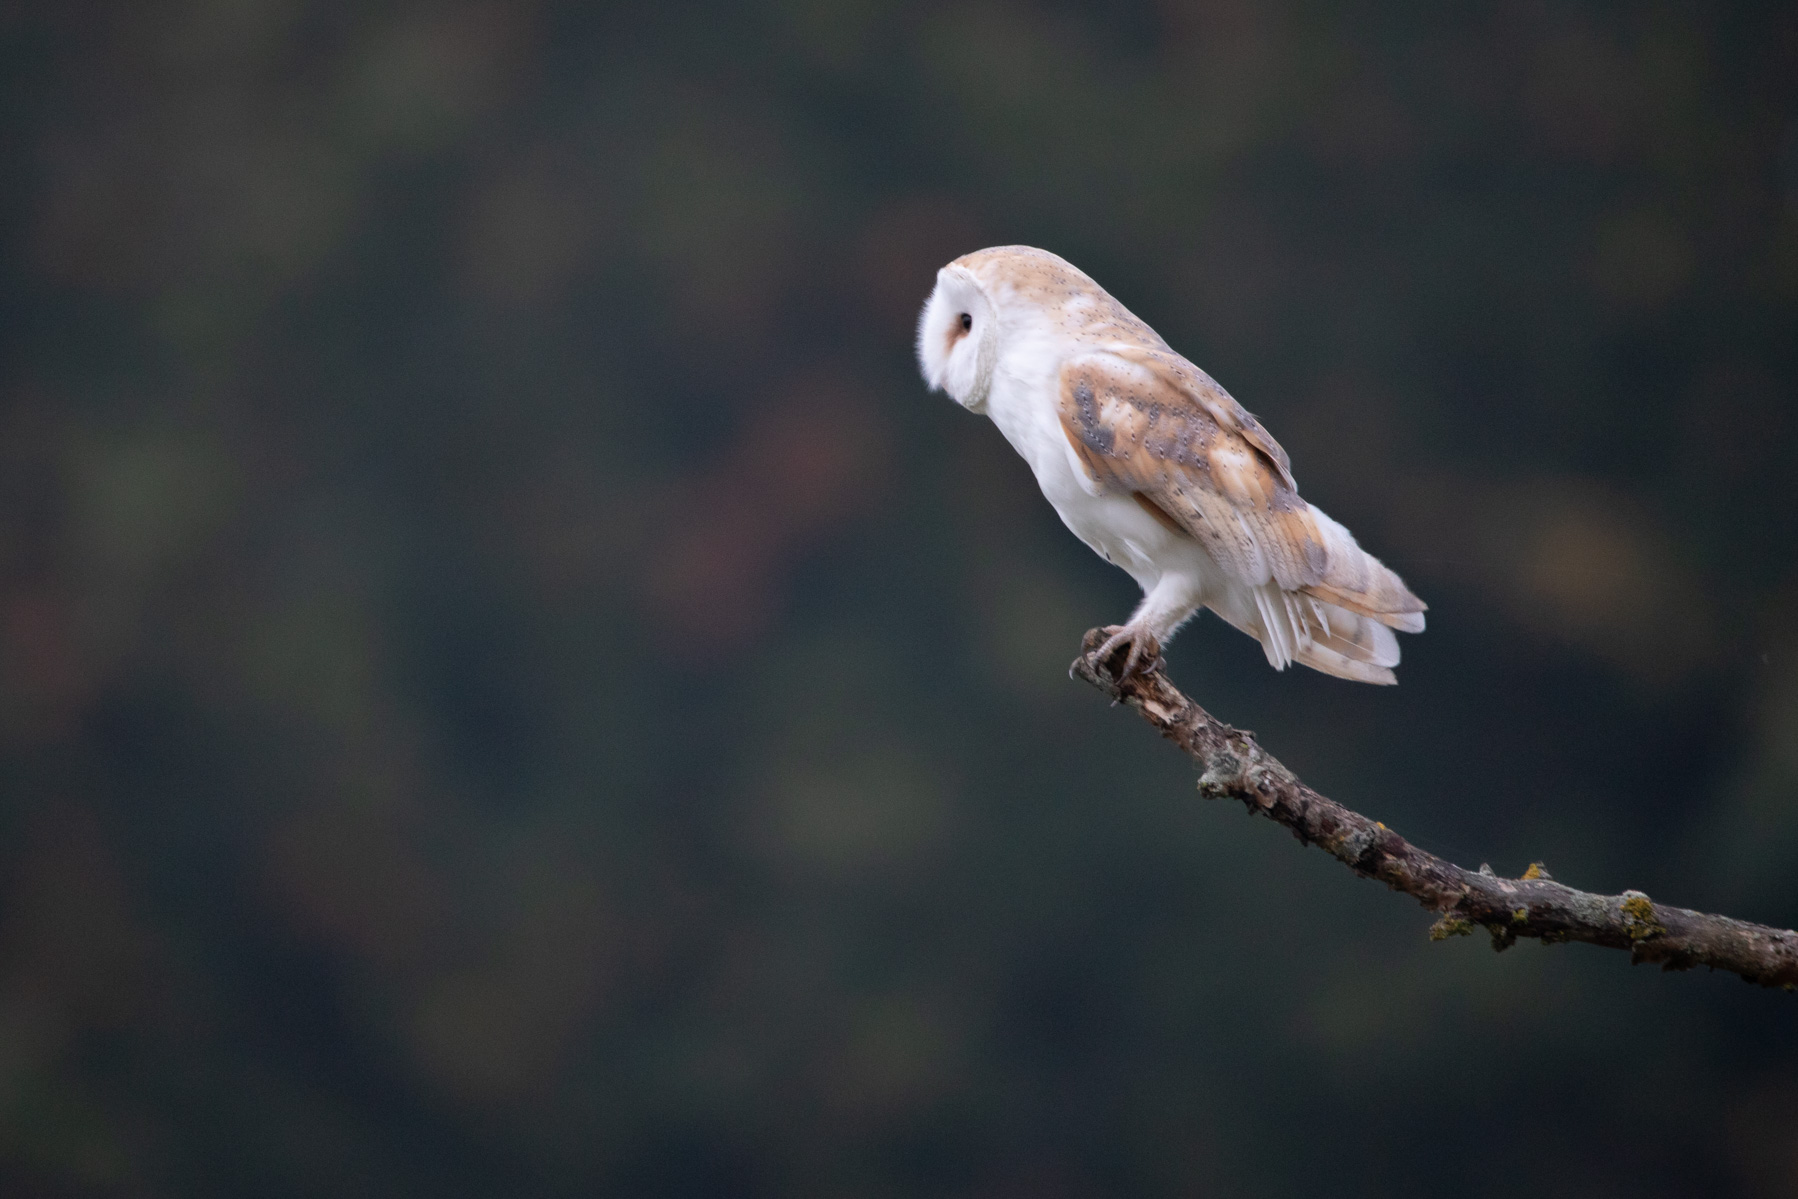 Morning barn owl on branch